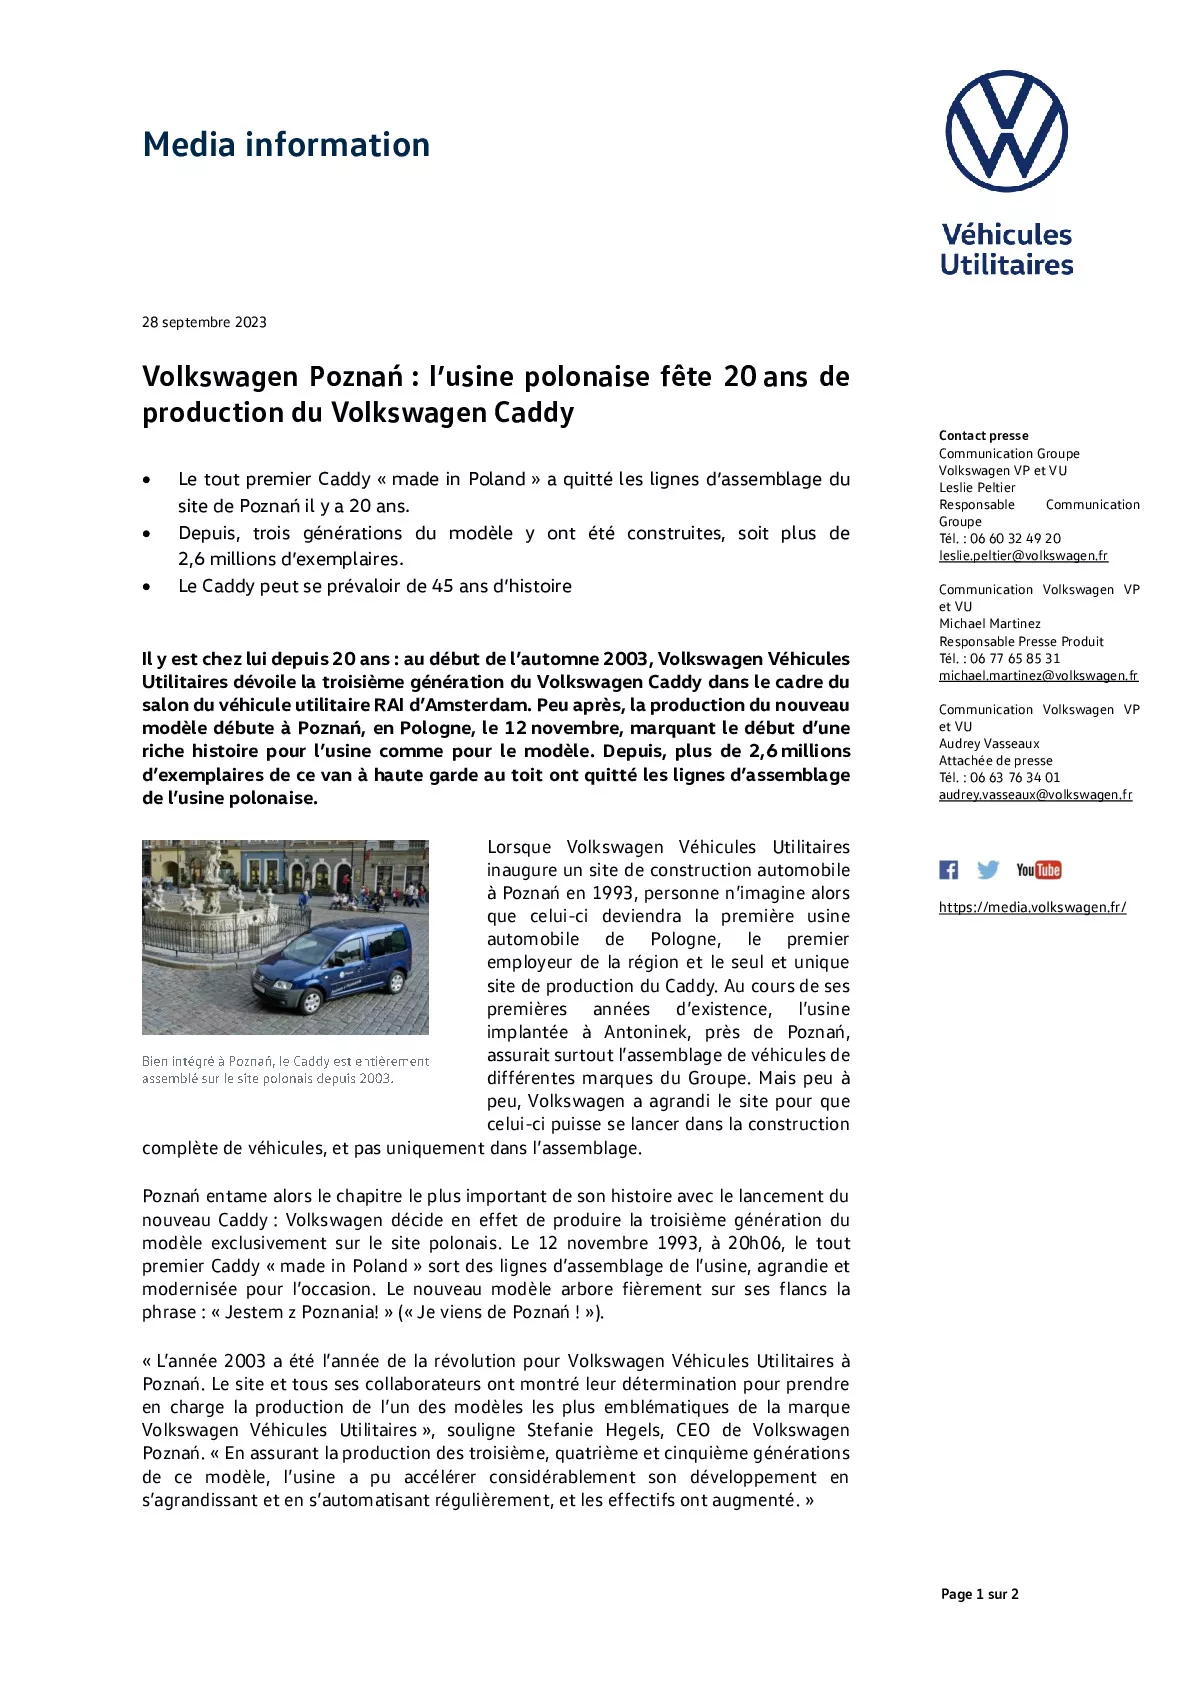 Volkswagen Poznań _l’usine polonaise fête 20 ans de production du Volkswagen Caddy-pdf